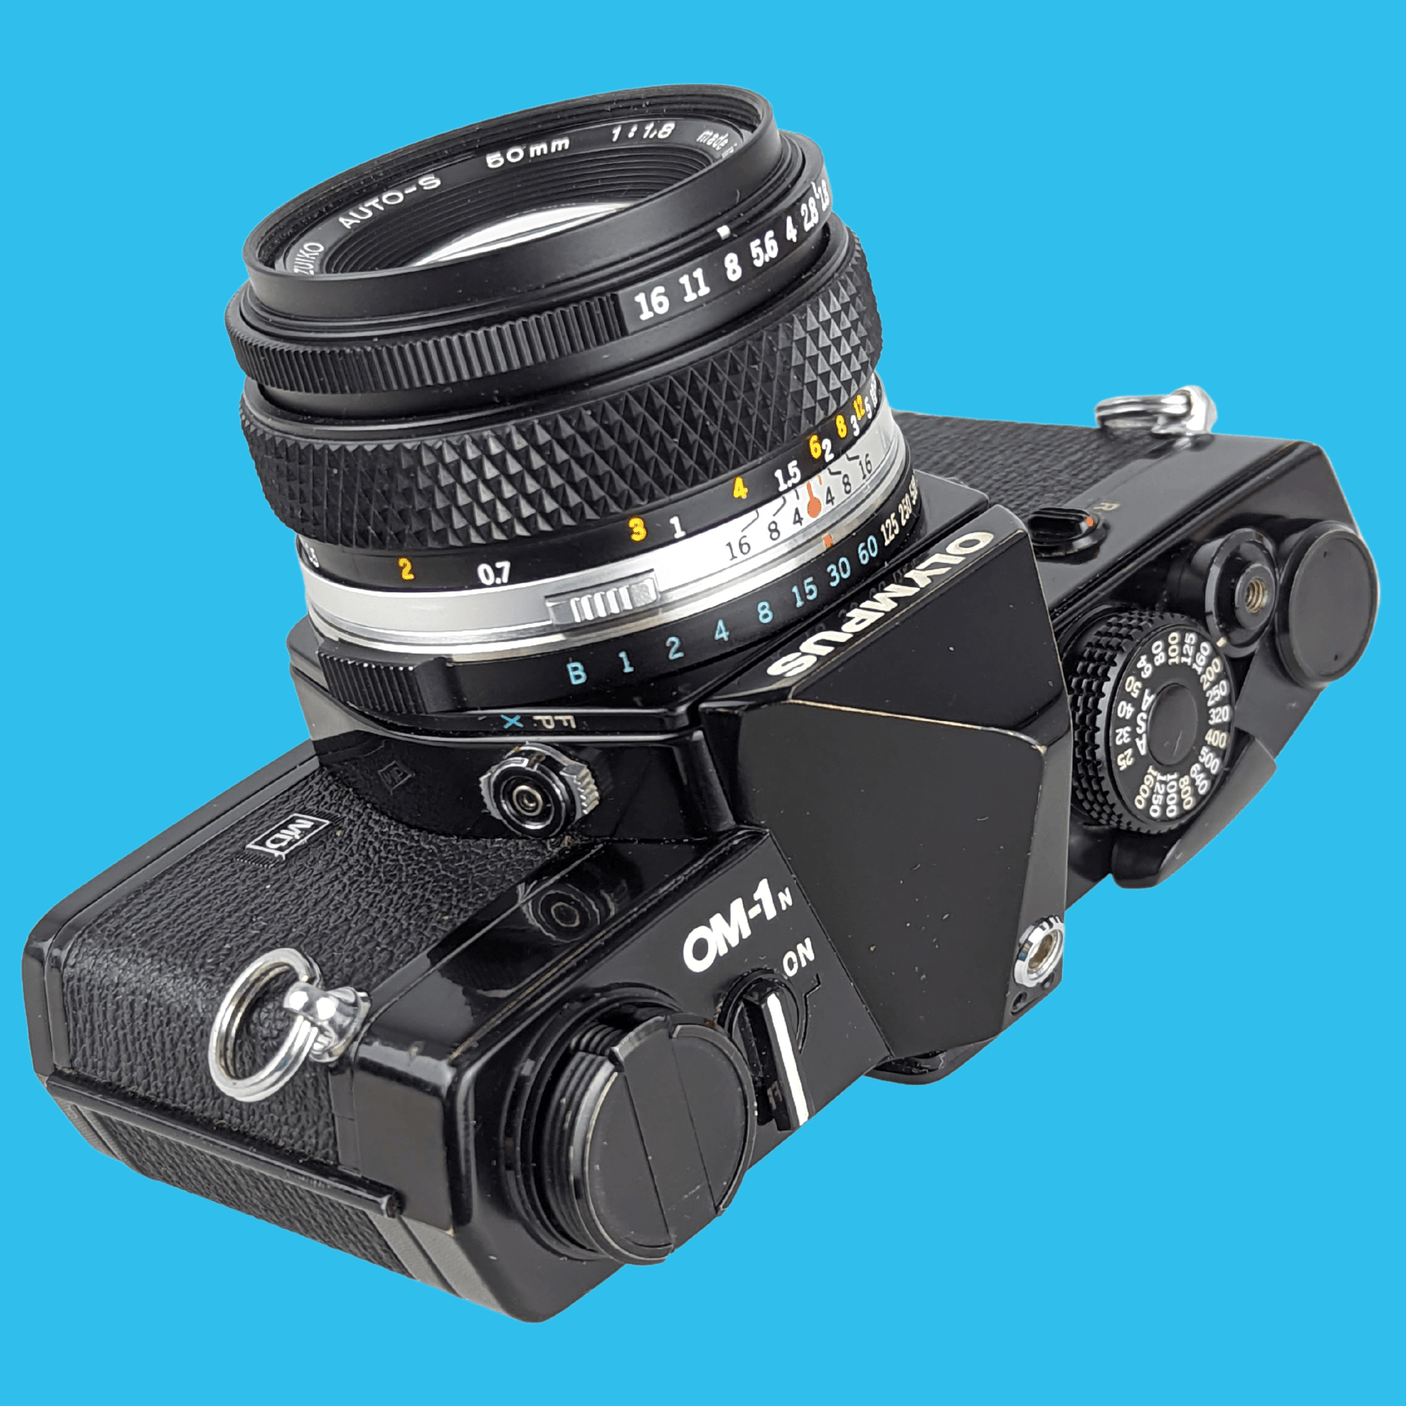 オリンパス OM 1 ブラック ビンテージ 35mm SLR フィルム カメラ、f/1.8 50mm プライム レンズ付き